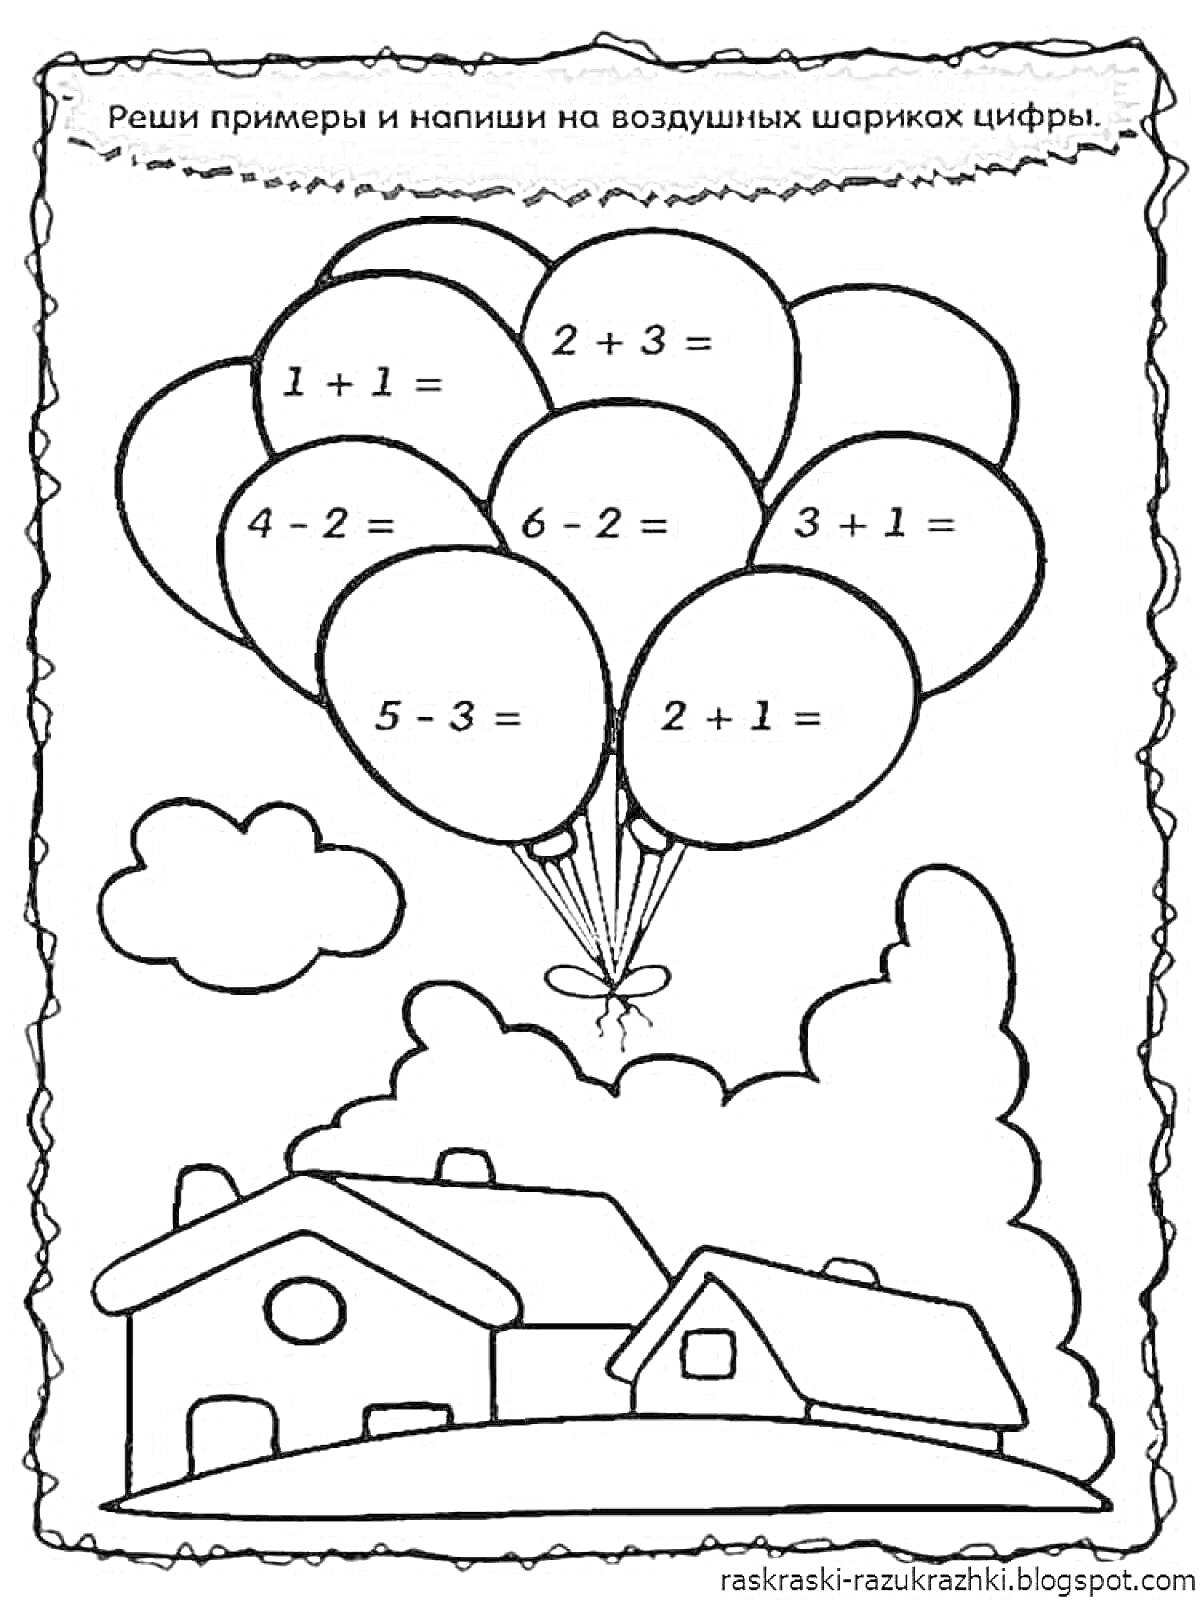 Воздушные шары с математическими примерами над домиками